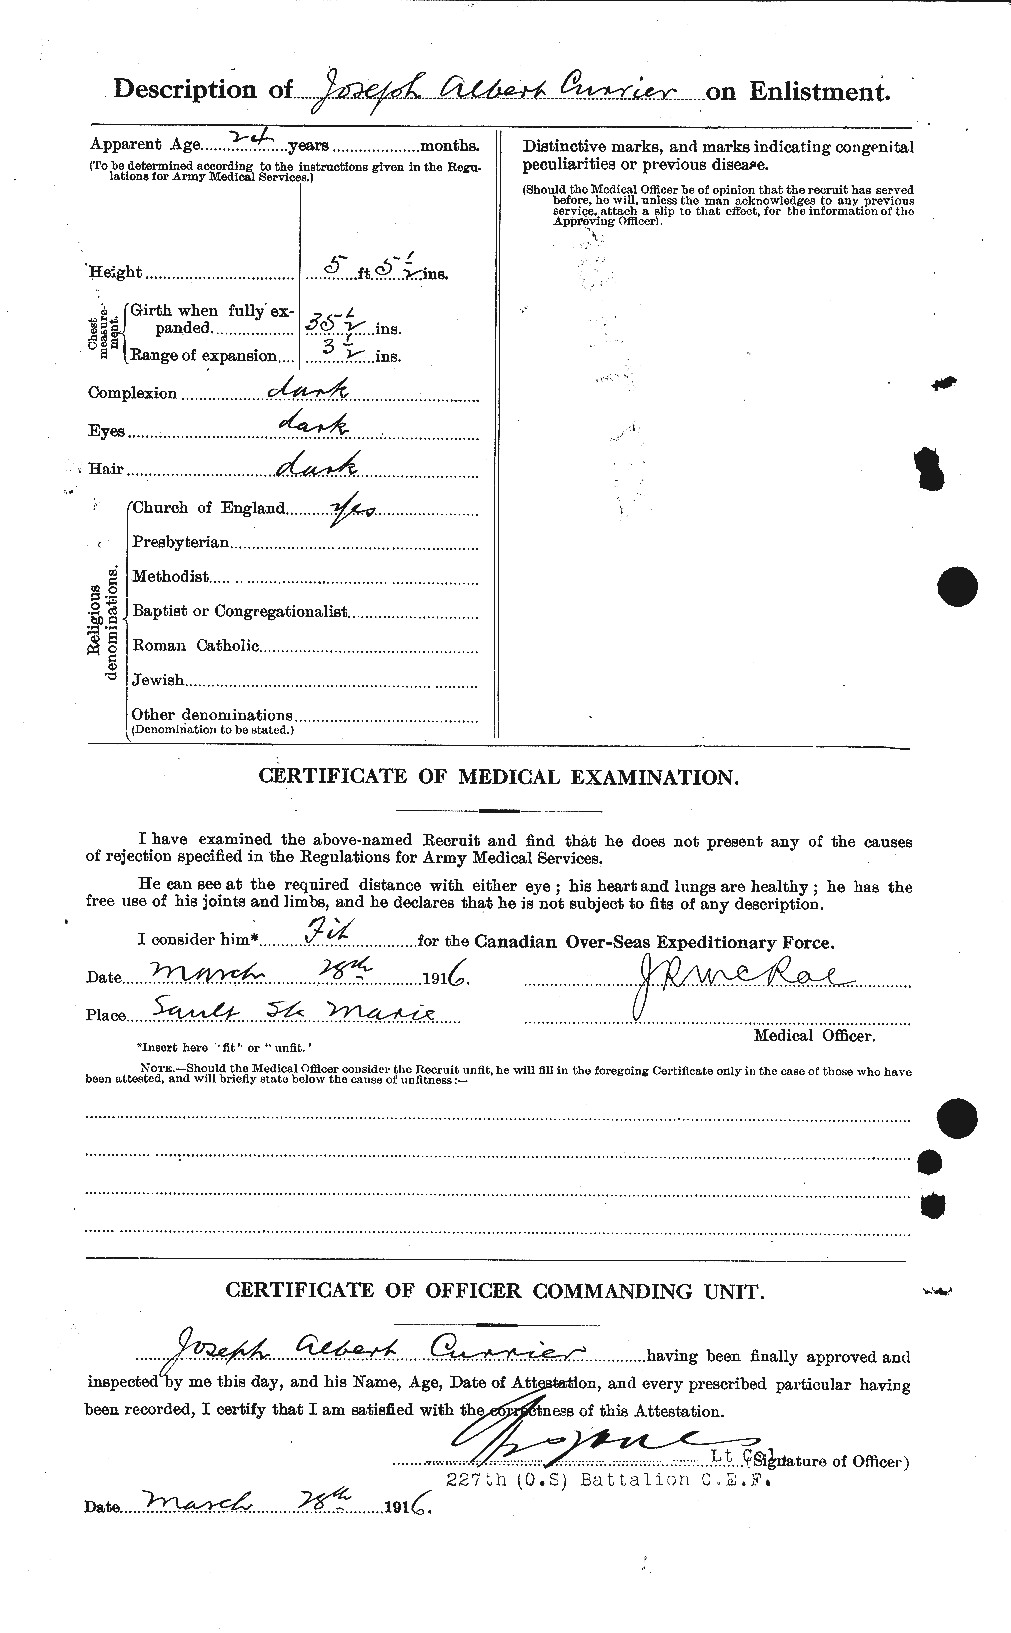 Dossiers du Personnel de la Première Guerre mondiale - CEC 071405b